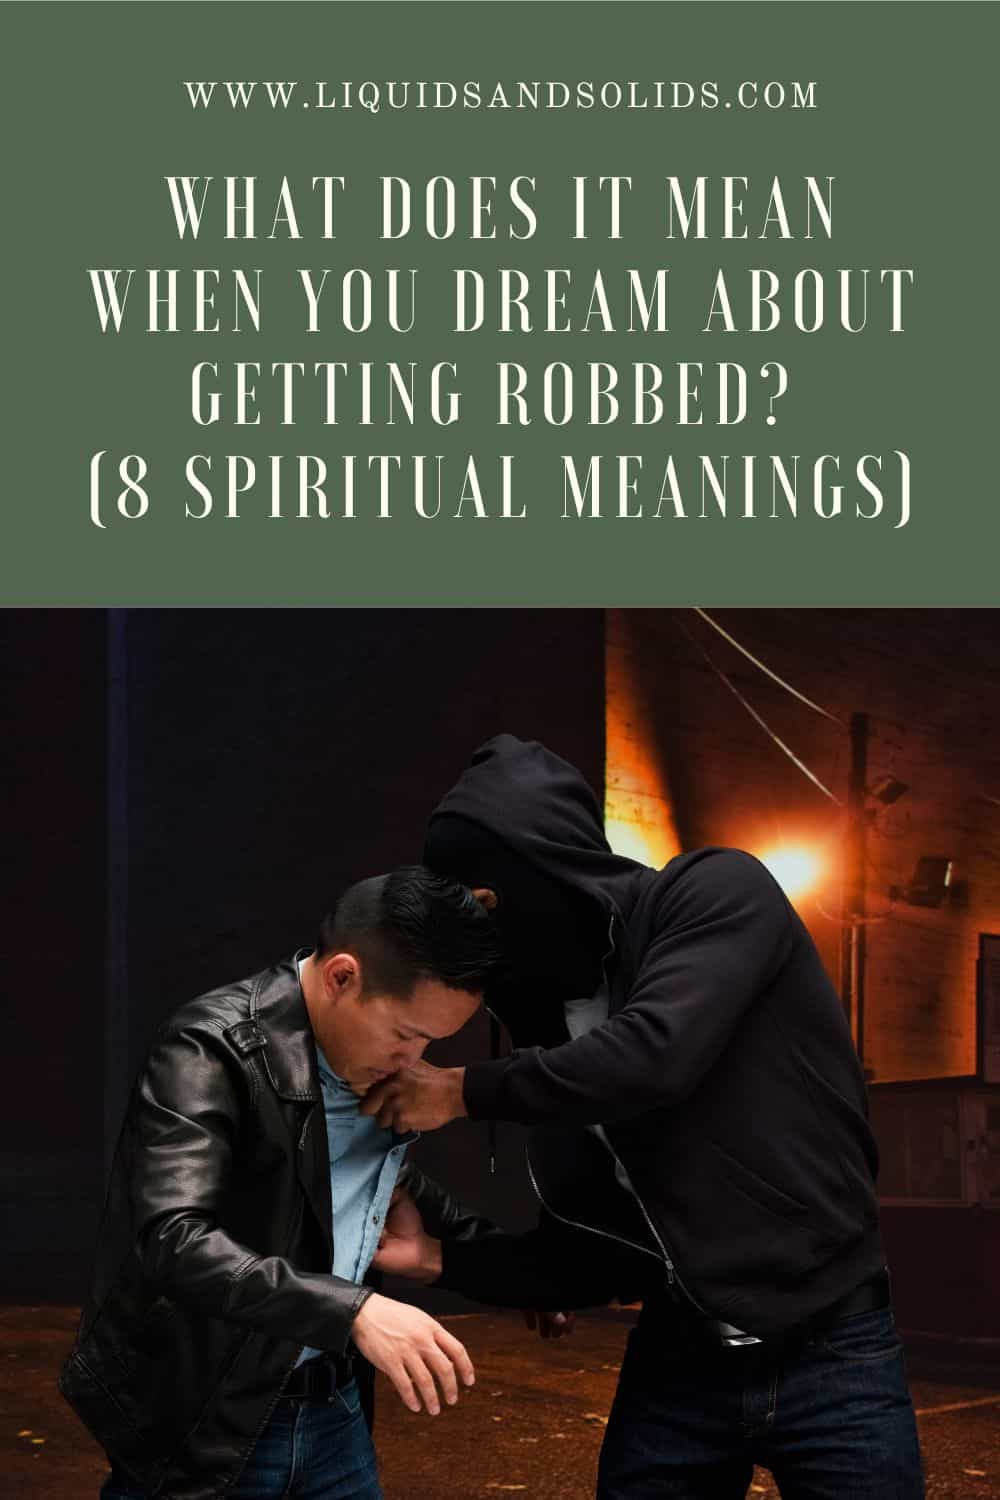  Mit jelent, ha azt álmodod, hogy kirabolnak? (8 spirituális jelentés)